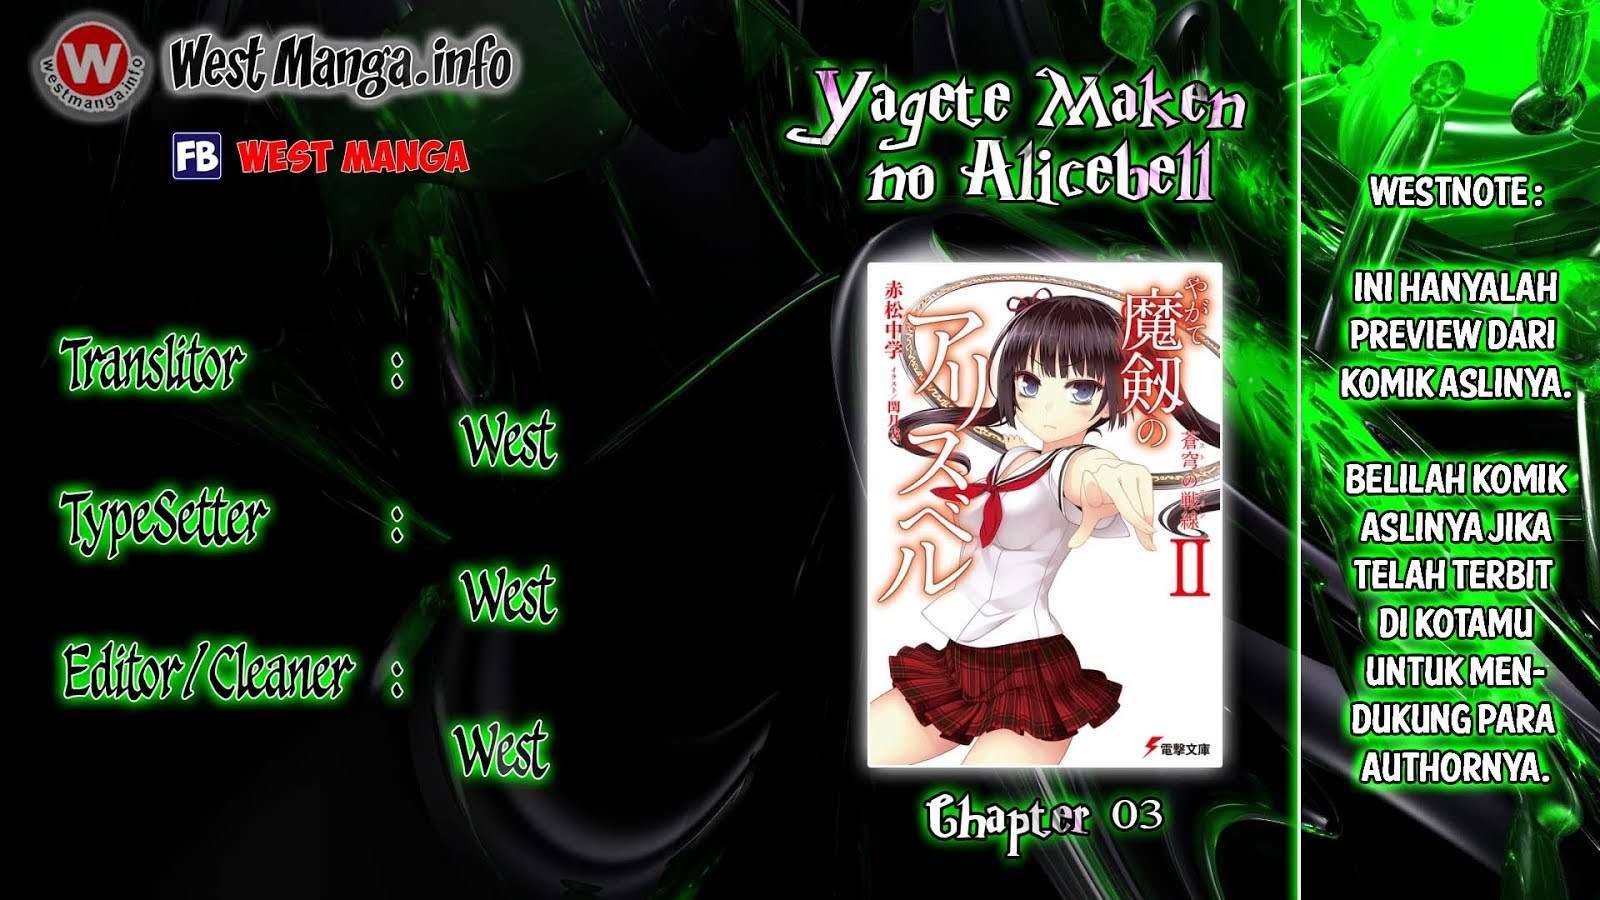 Yagate Maken no Alicebell Chapter 03